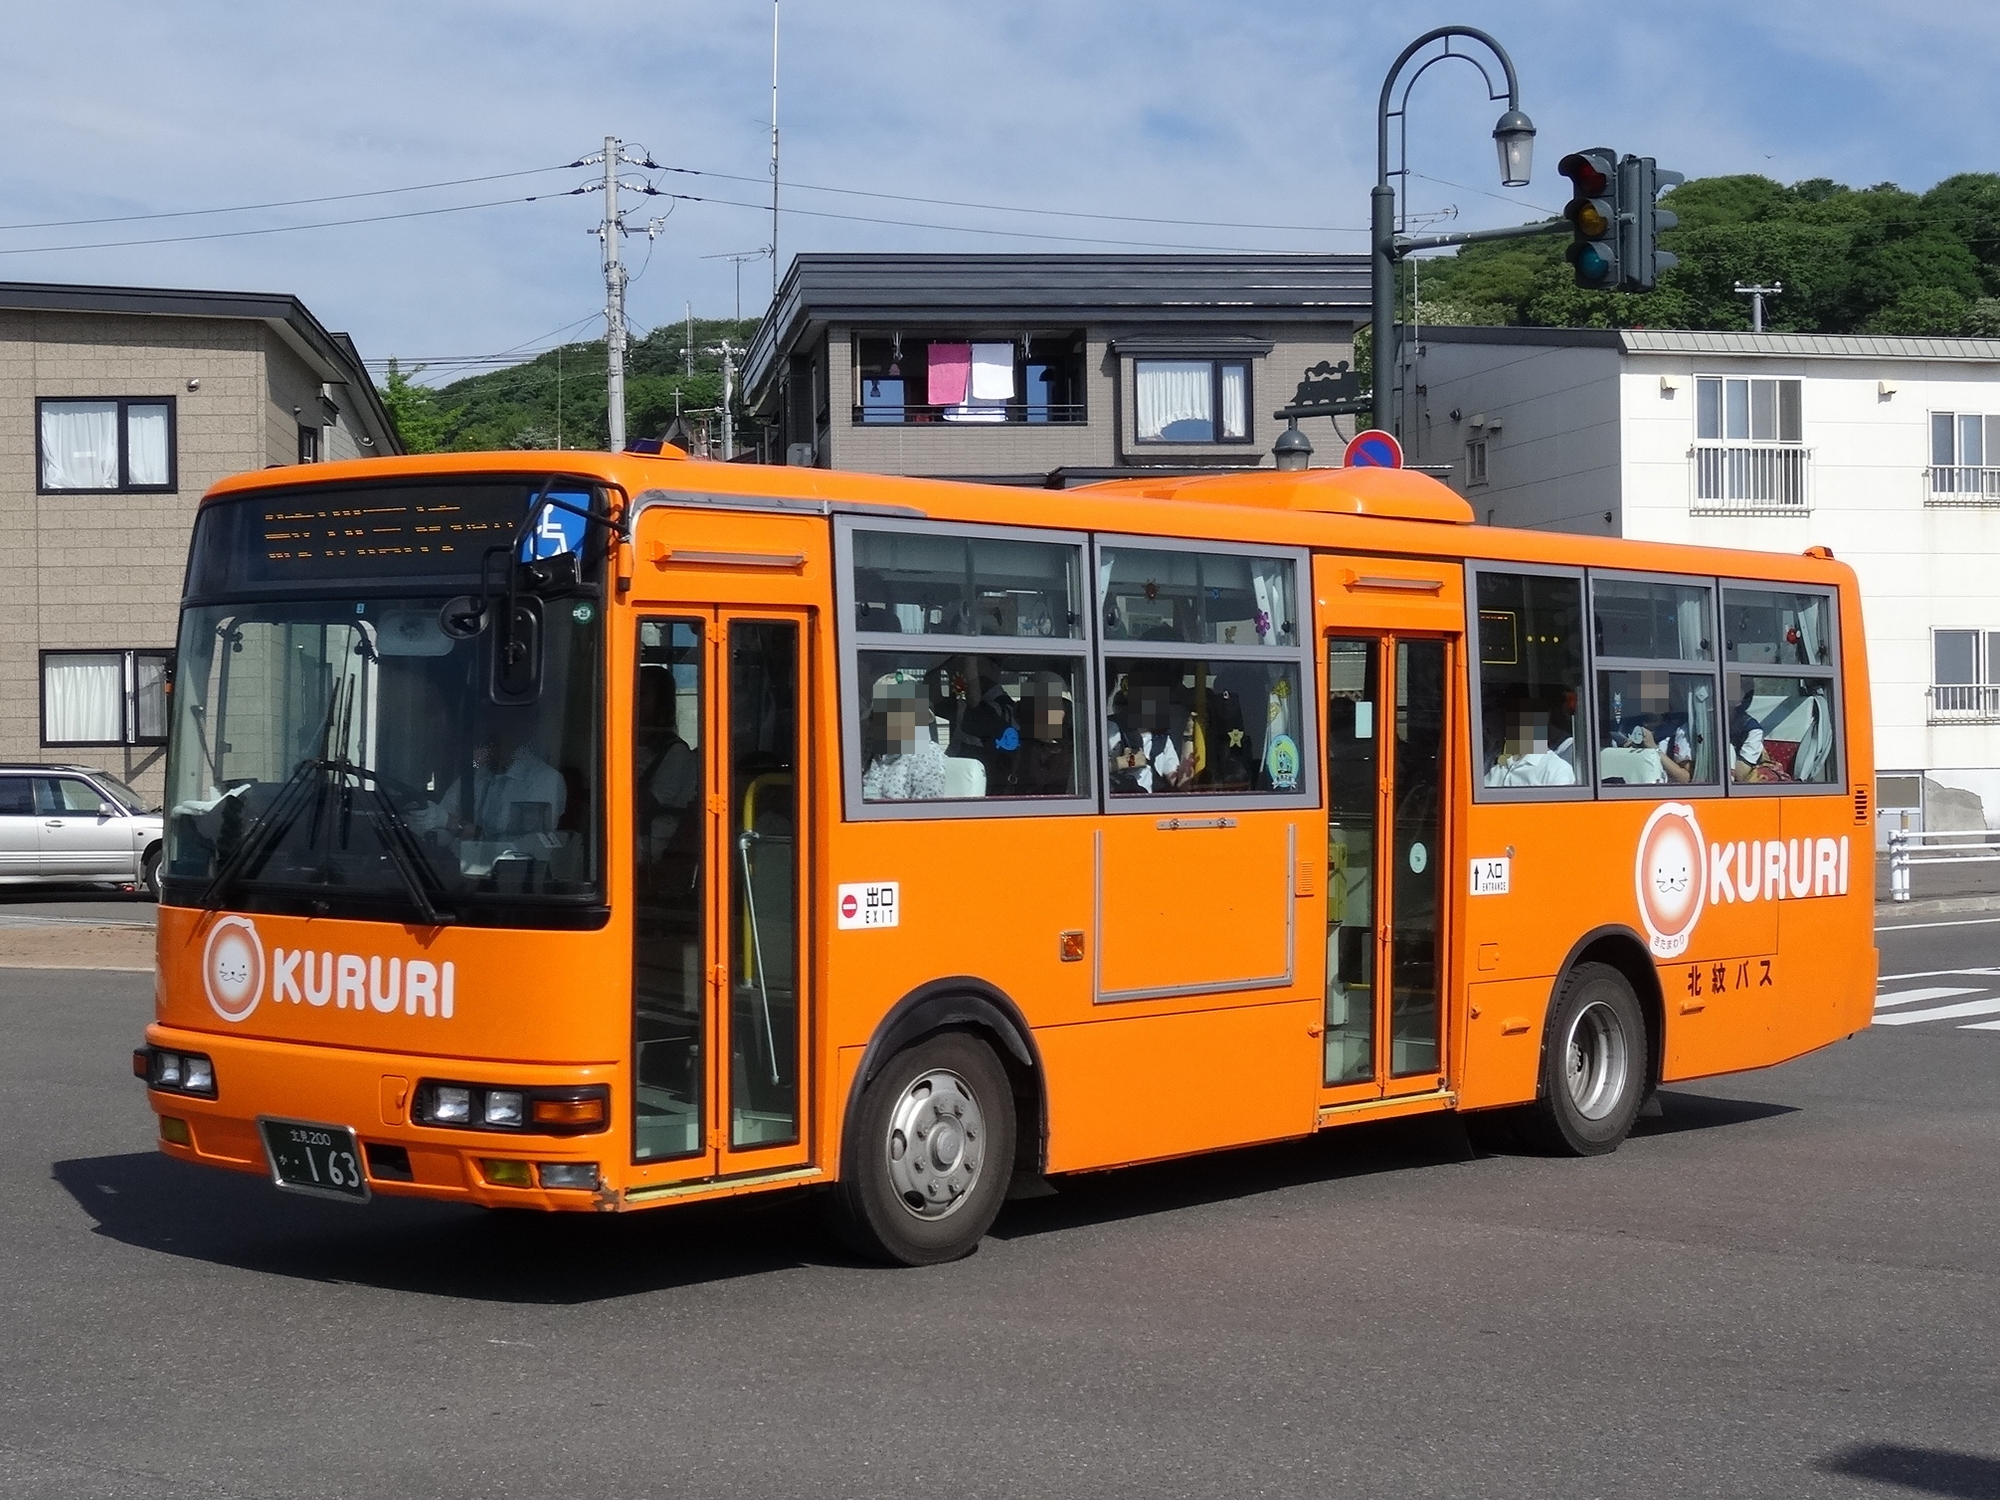 Сайт оранжевый автобус пермь. Оранжевый автобус. Приложение автобусы апельсин.